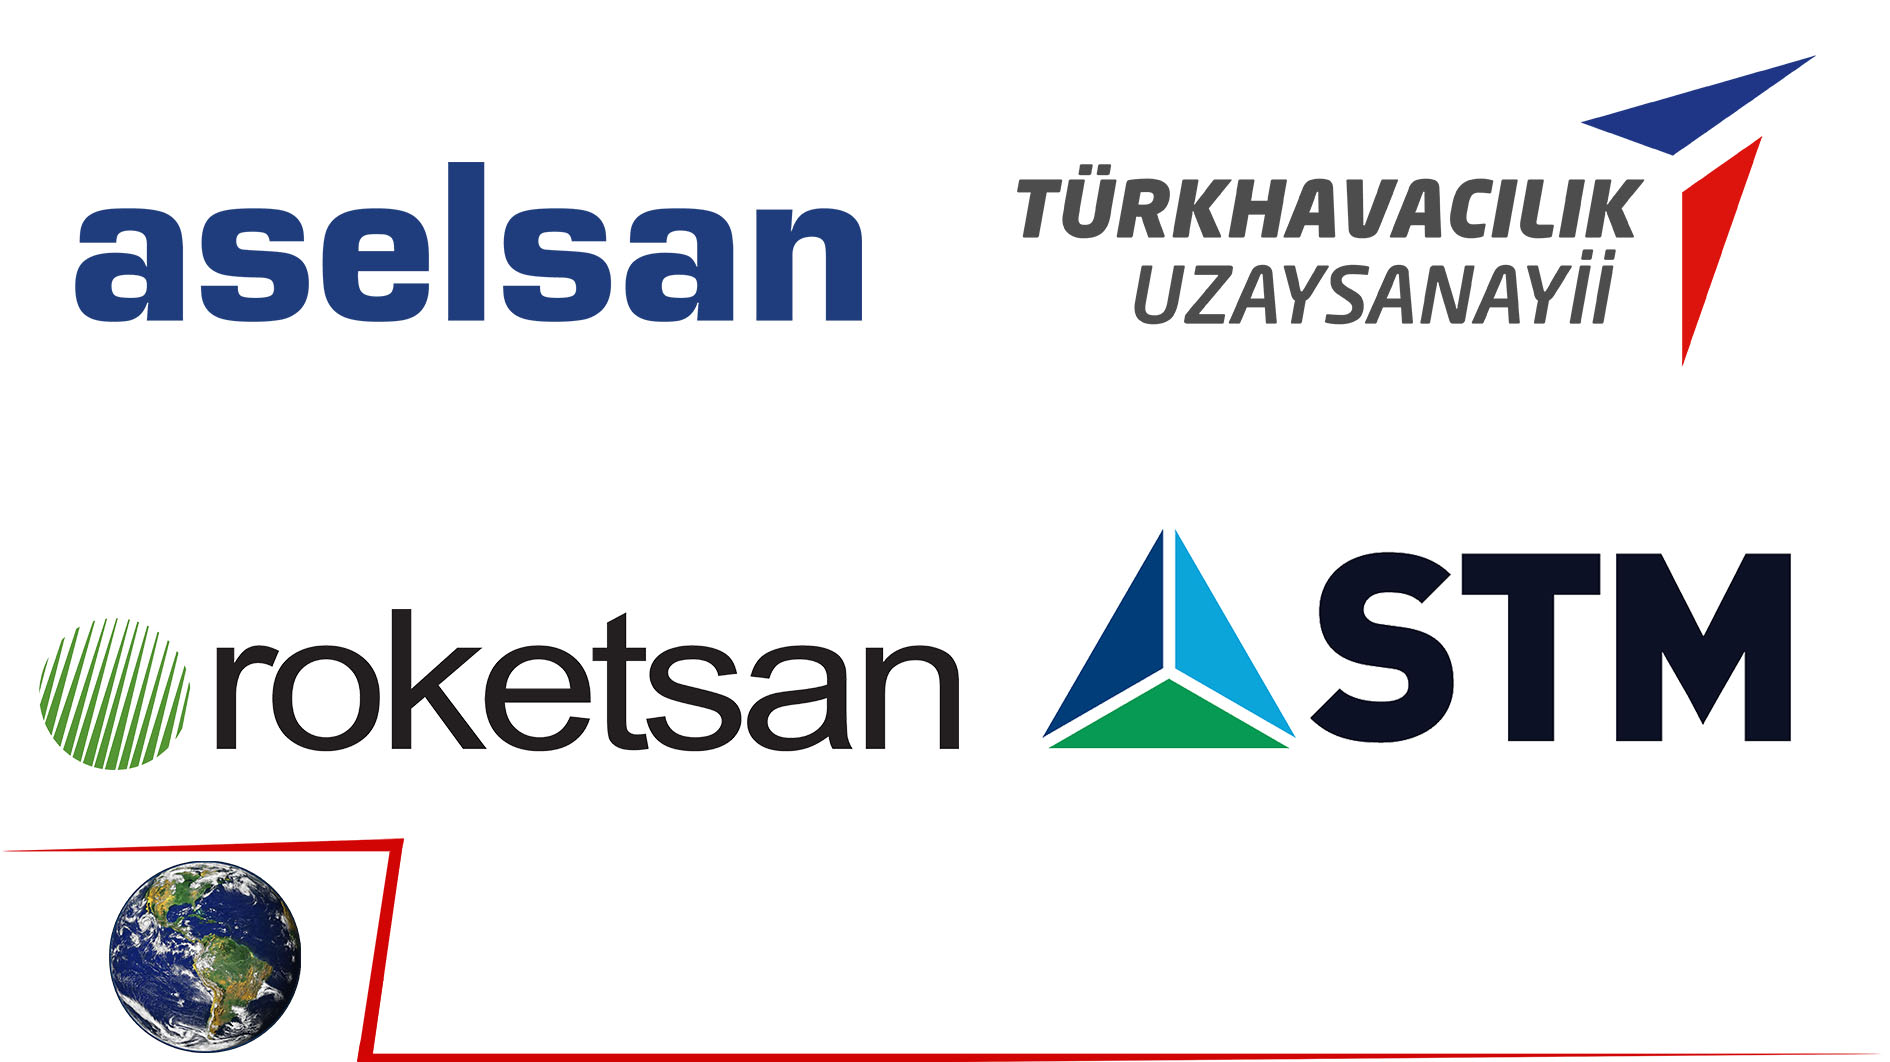 Dünyanın ilk 100 savunma sanayii şirketinde 4 Türk şirket